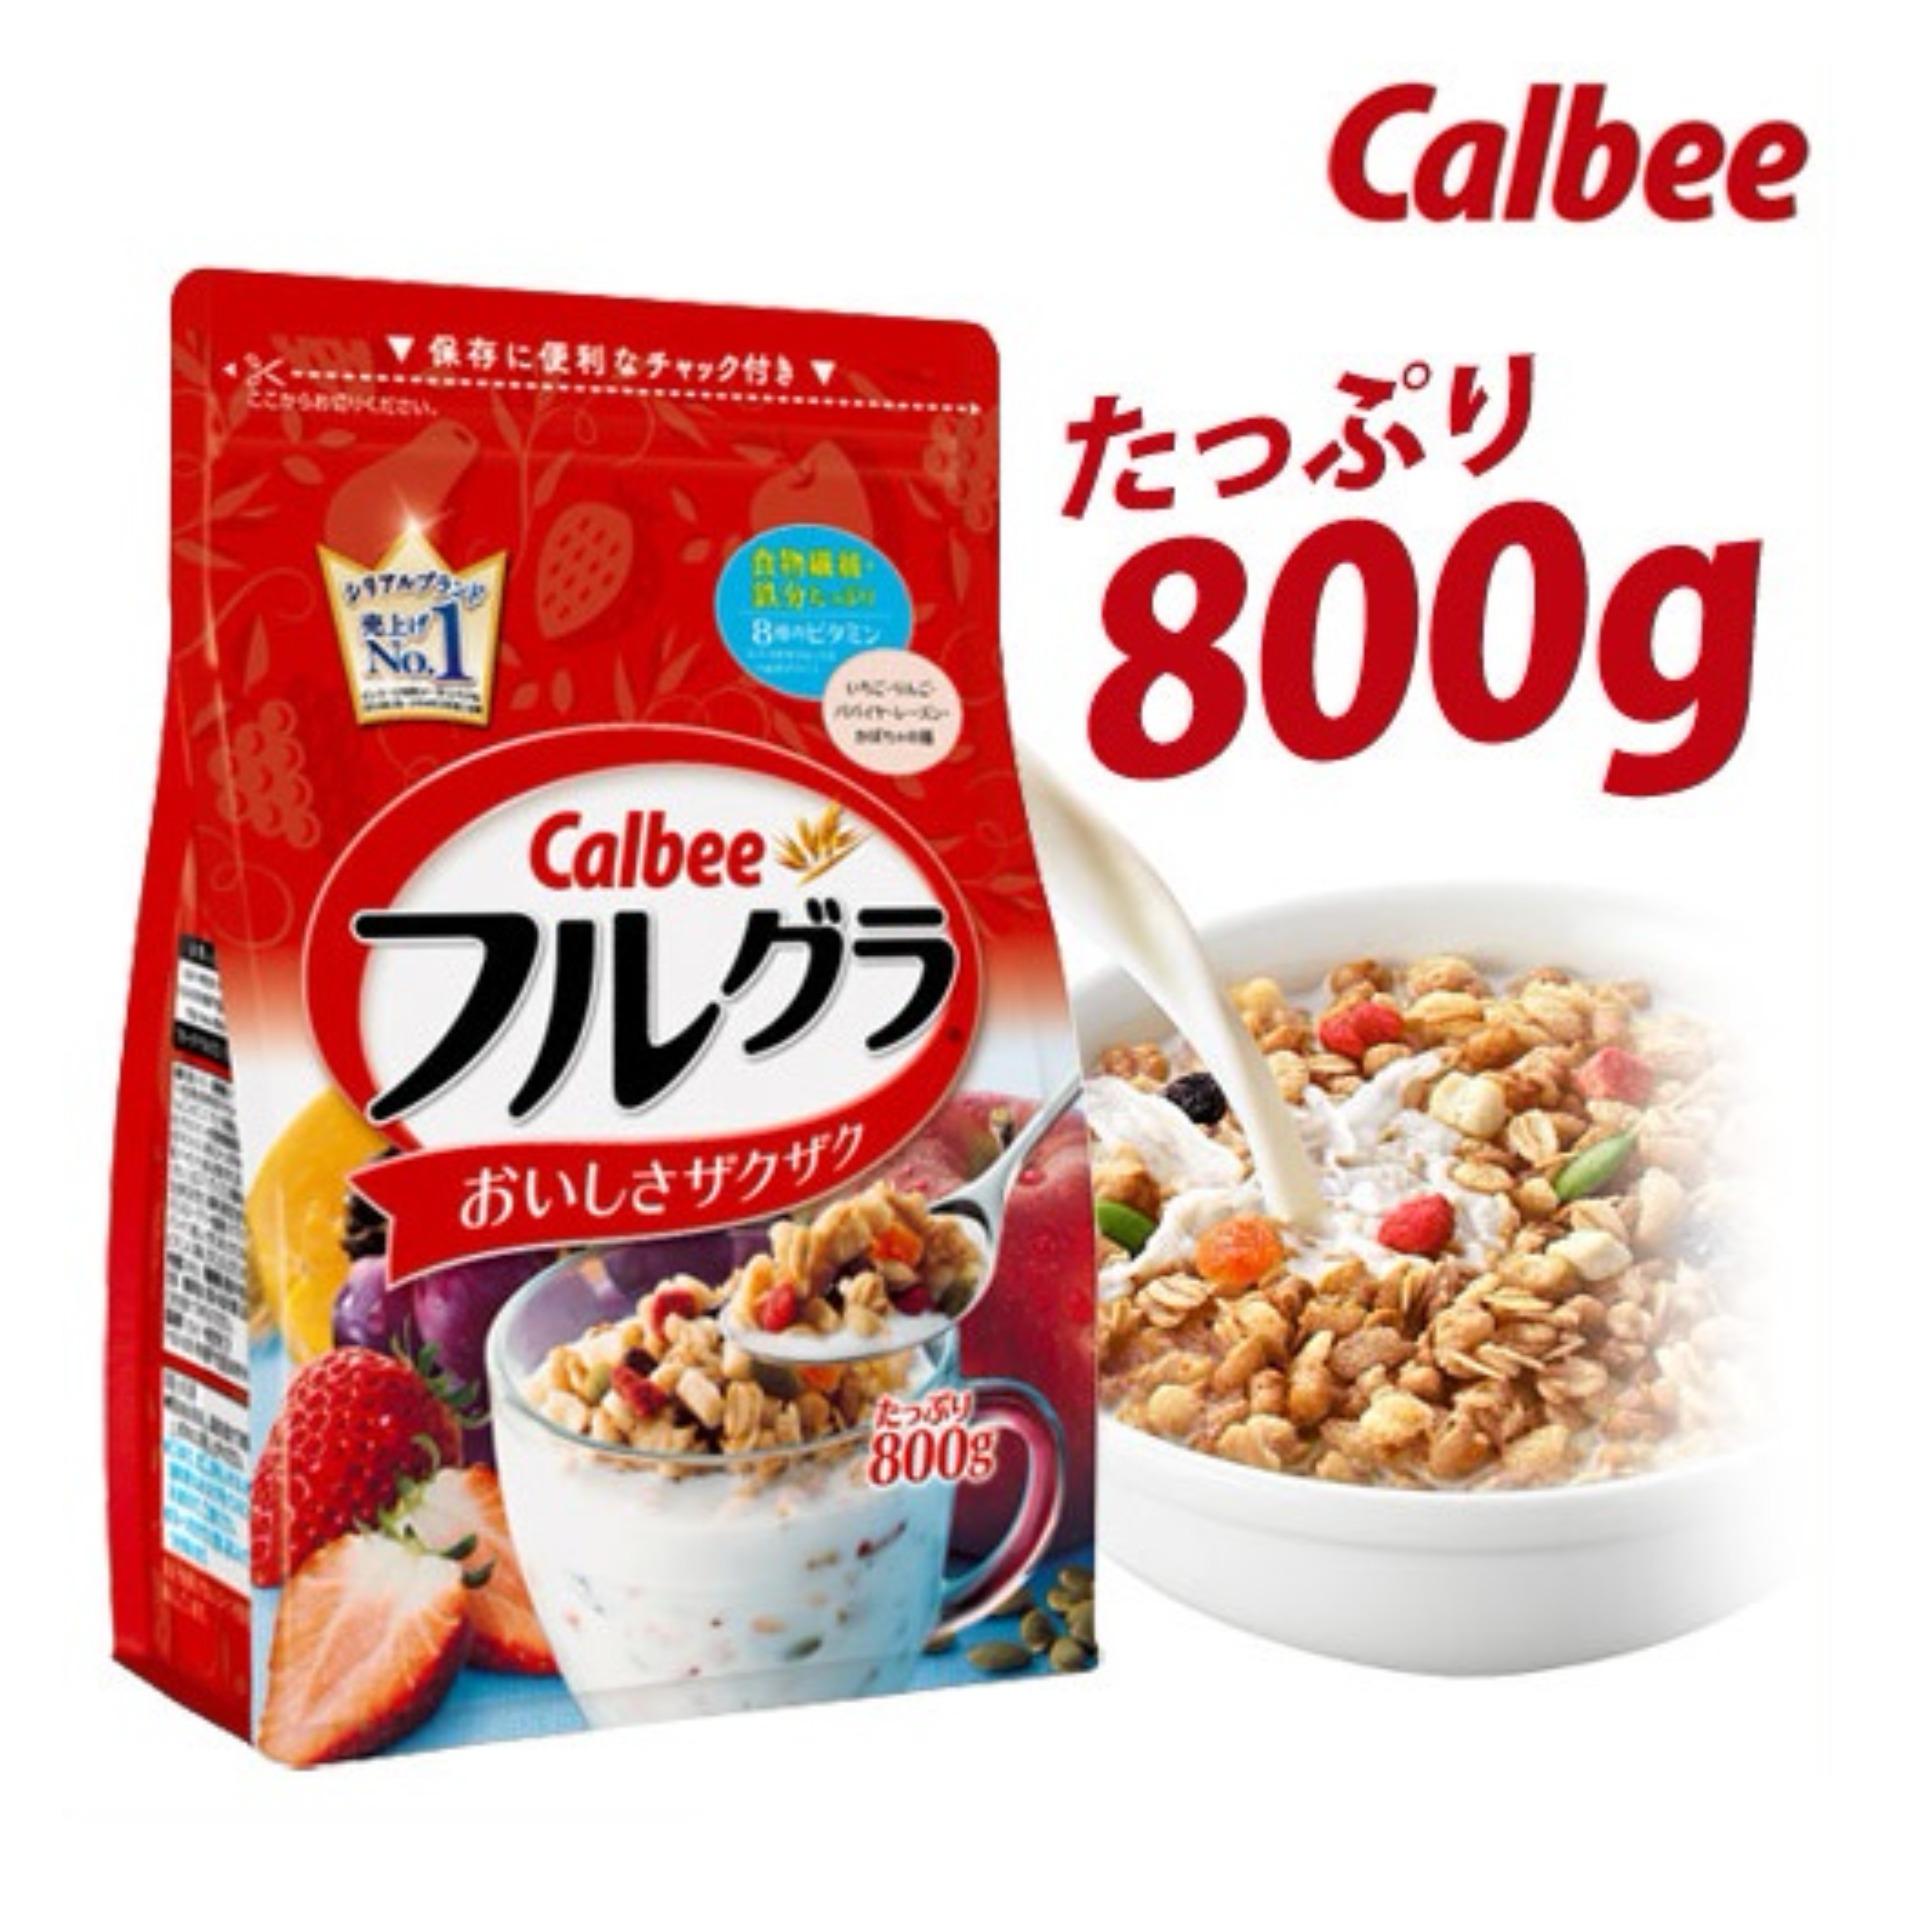 Ngũ cốc Calbee Nhật Bản 800g date mới nhất 31.08.2018